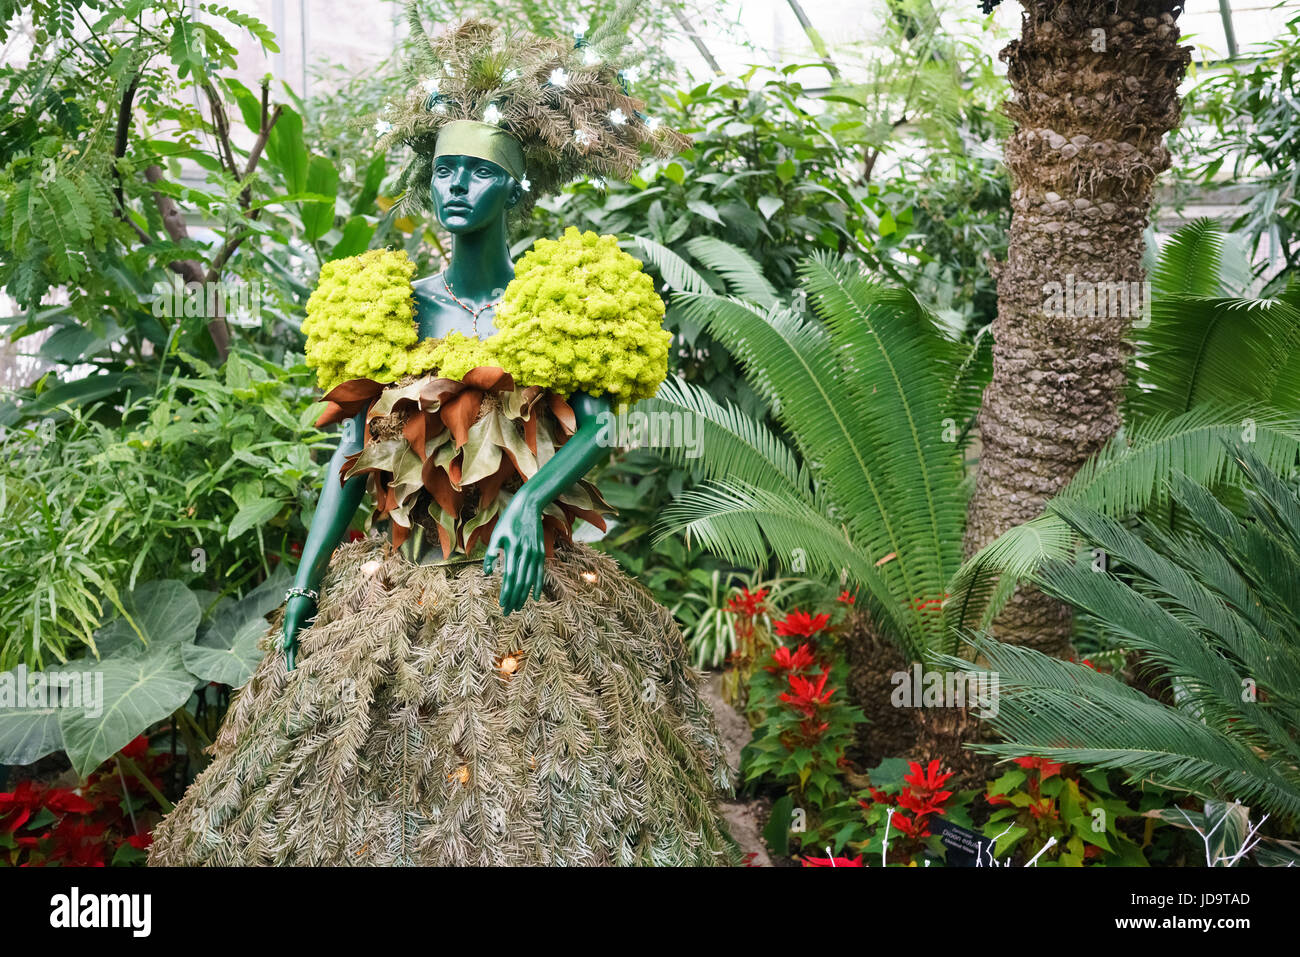 Manichino con abito realizzato da piante, nel giardino ornamentale con varietà di piante e fiori Foto Stock